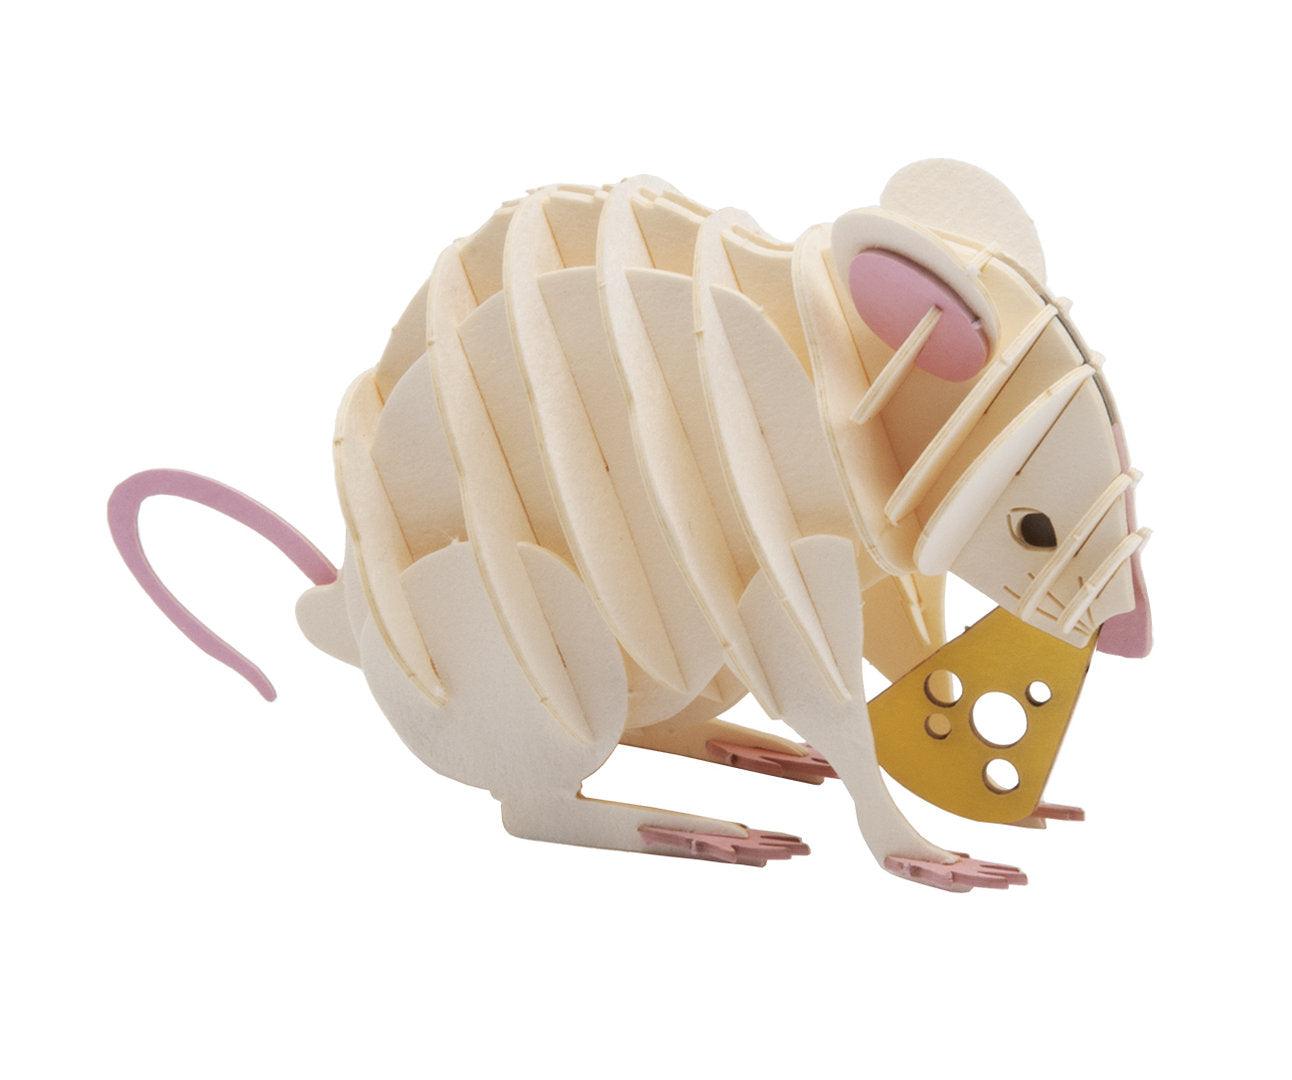 3D Weiße Maus Papiermodell - www. kunstundspiel .de 4031172116899